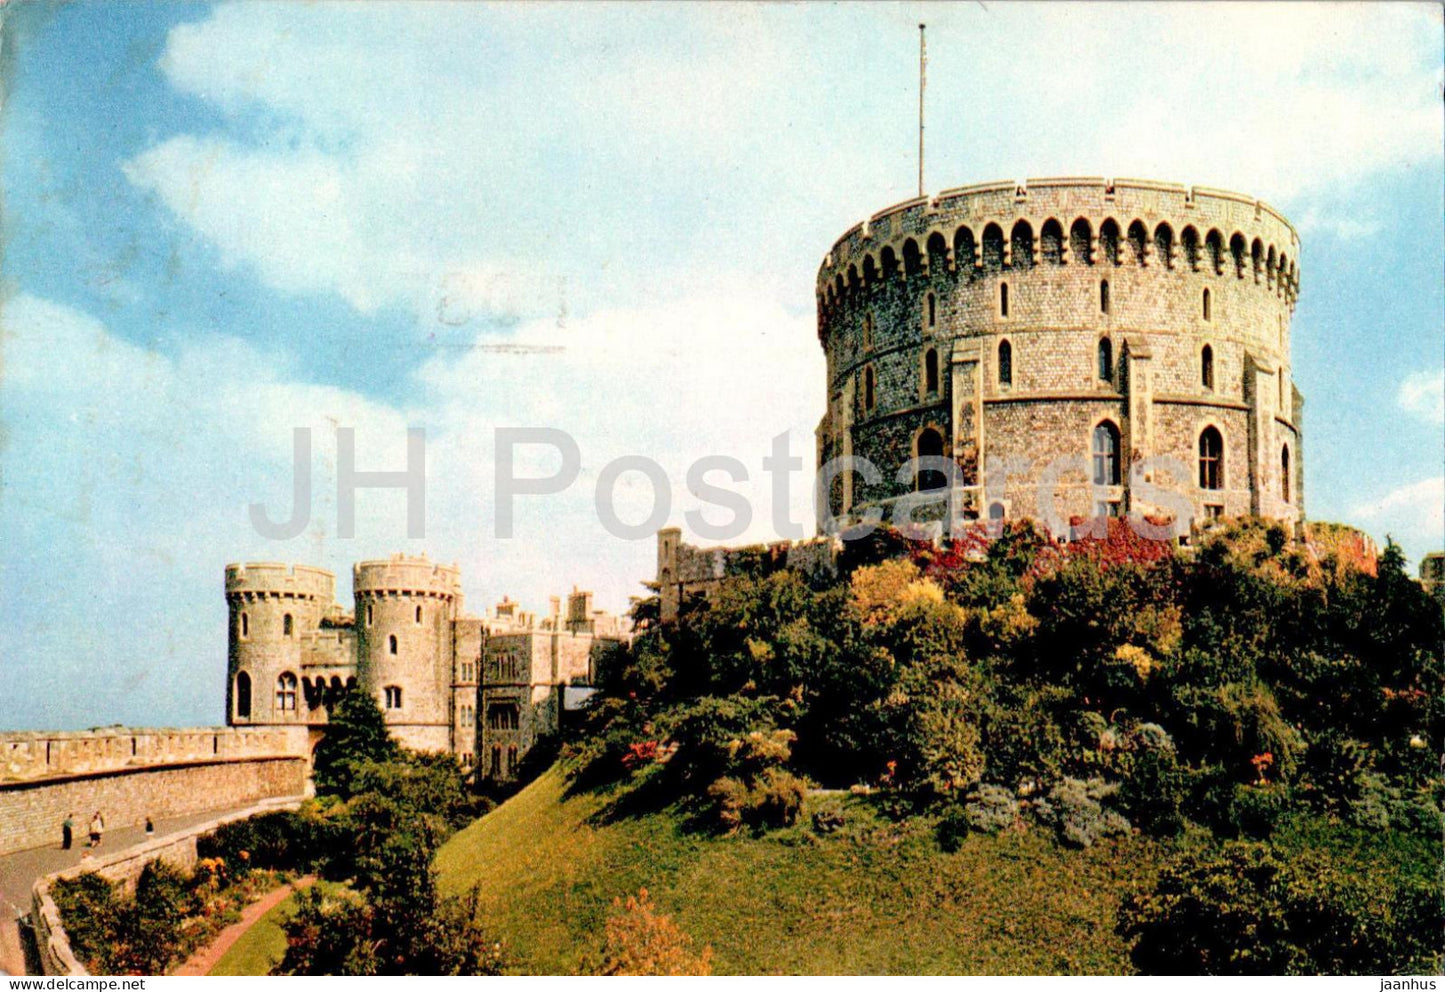 Windsor Castle - Berks - 1042 - 1971 - England - United Kingdom - used